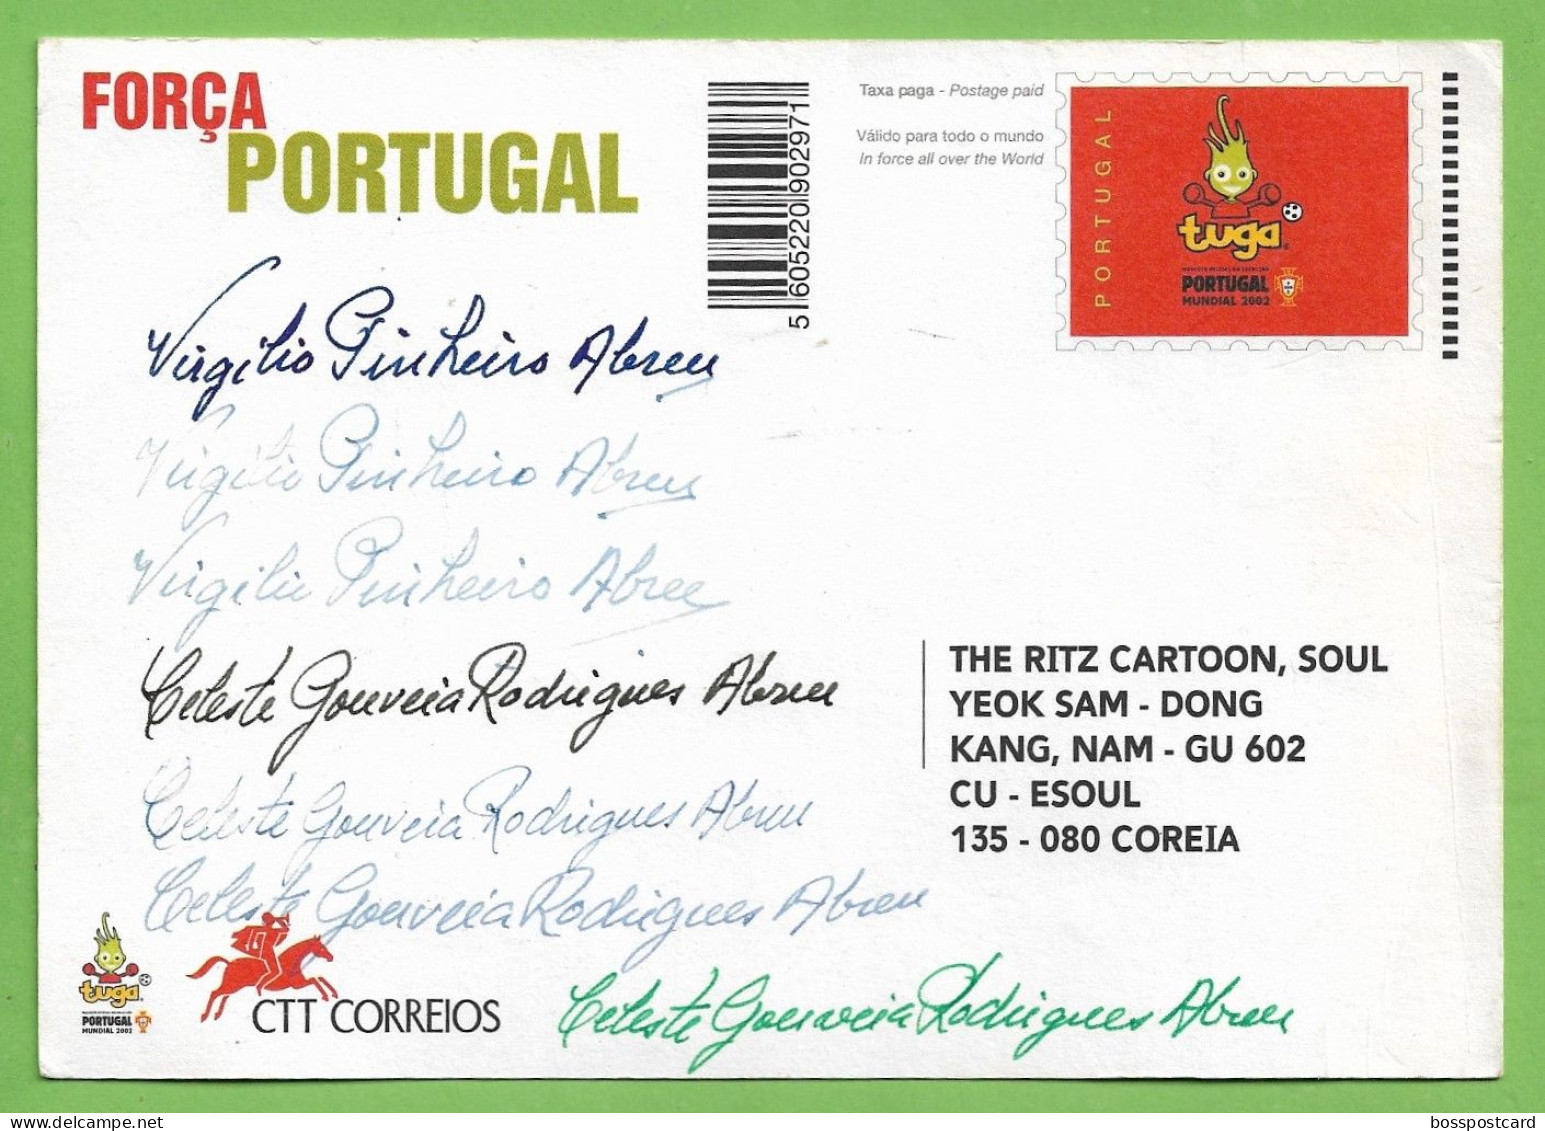 Lisboa - Selecção Nacional De Futebol No Mundial De 2002 - Estádio - Football - Stadium - Portugal - Soccer